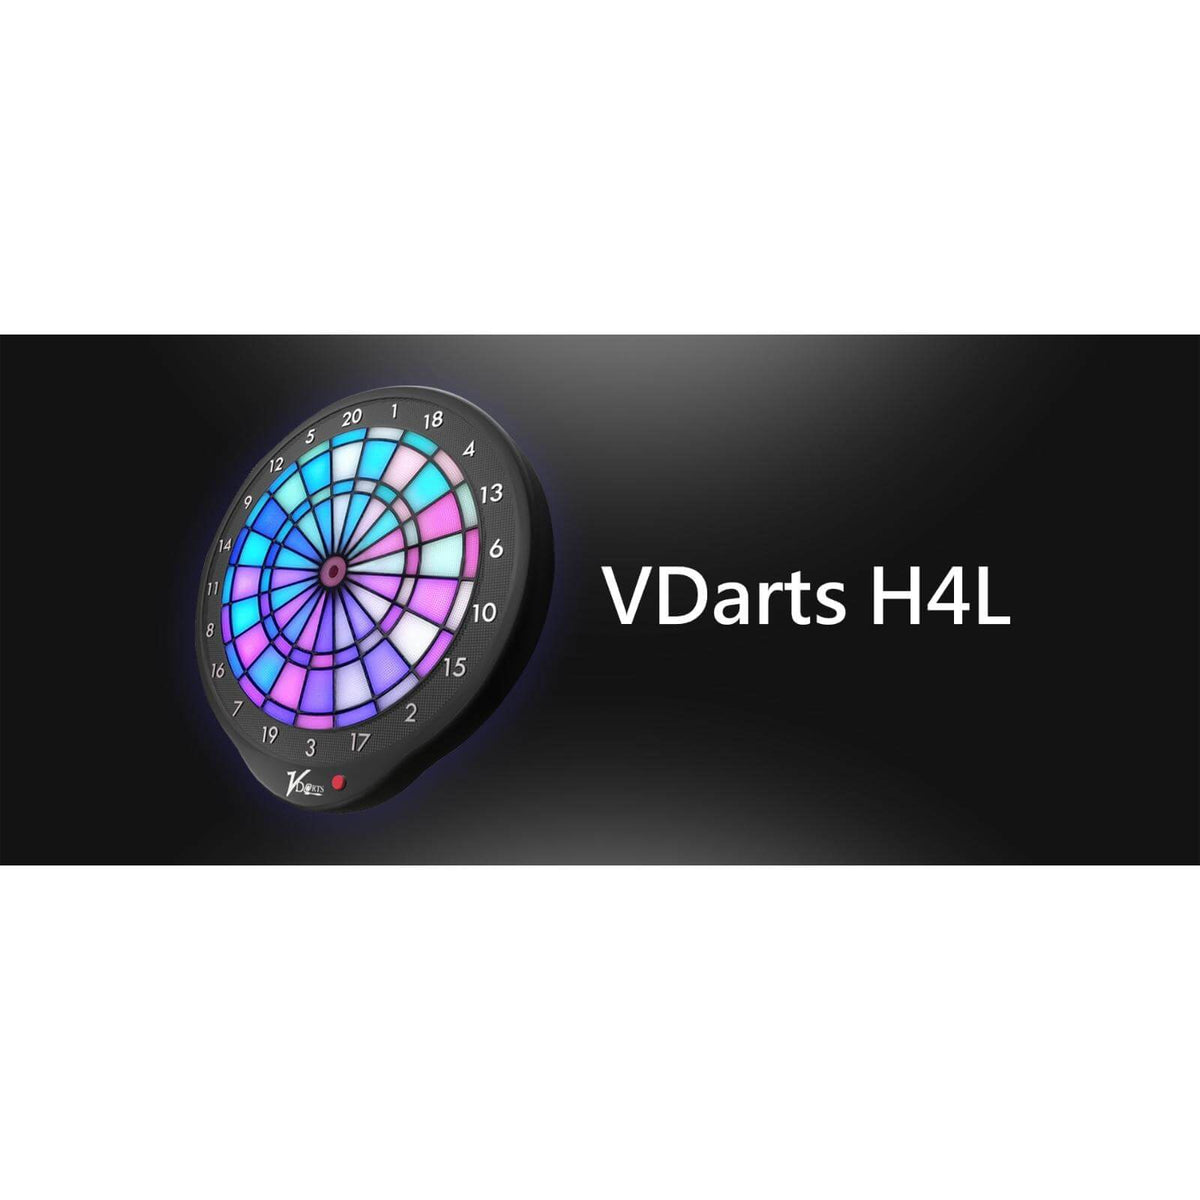 VDarts H4L Global Online Electronic Dartboard